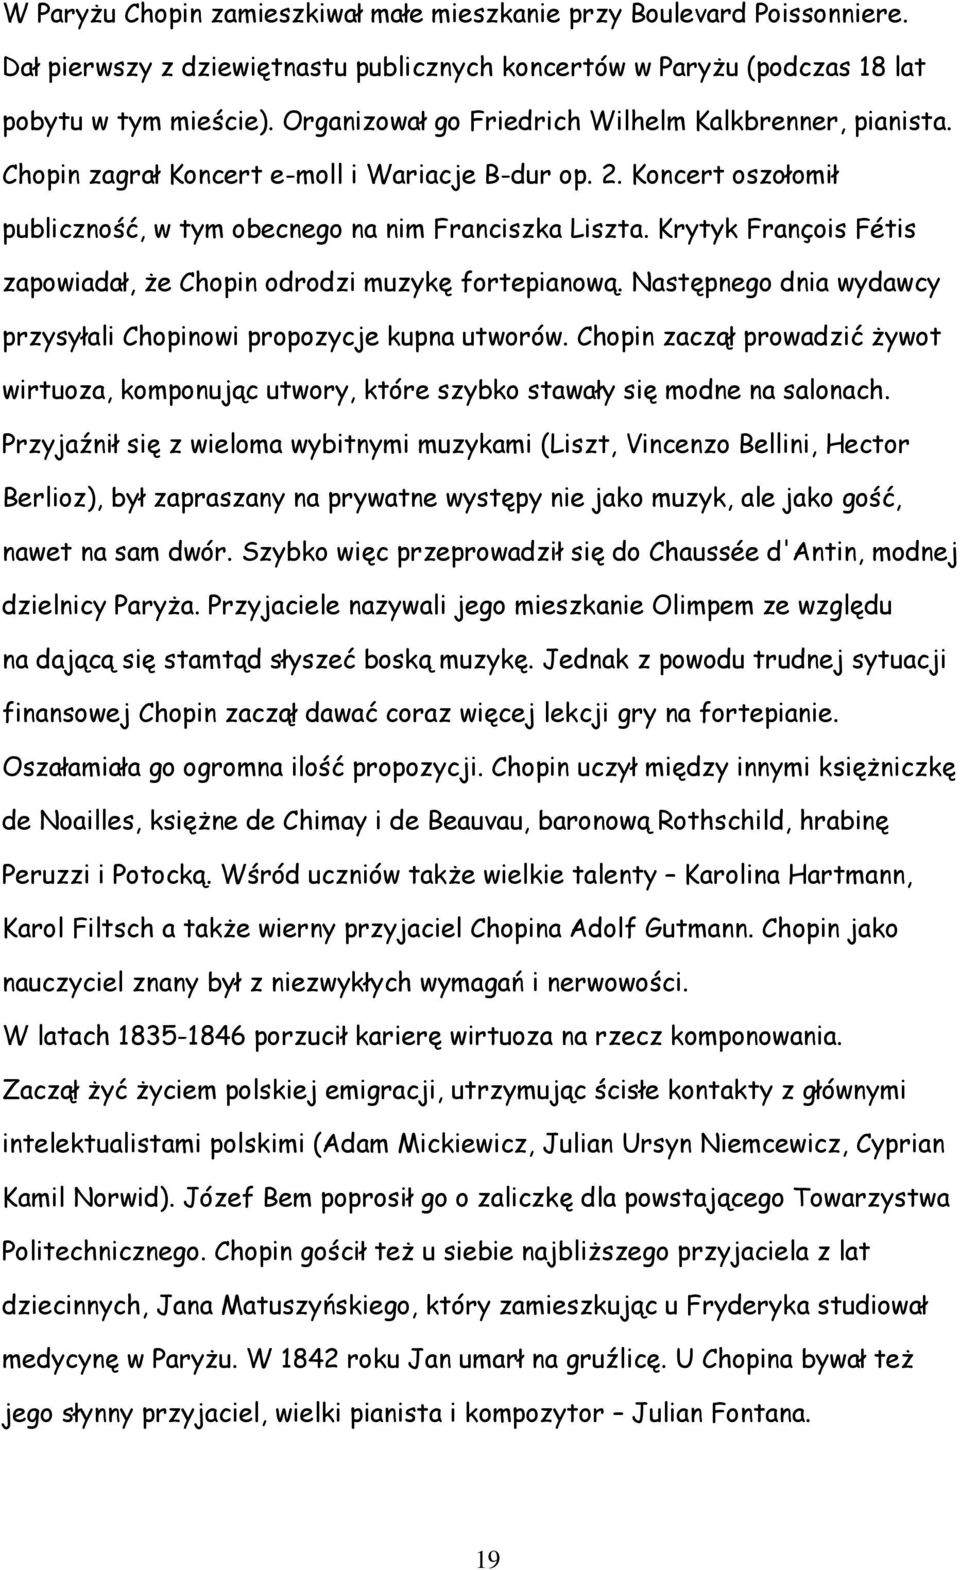 Krytyk François Fétis zapowiadał, że Chopin odrodzi muzykę fortepianową. Następnego dnia wydawcy przysyłali Chopinowi propozycje kupna utworów.